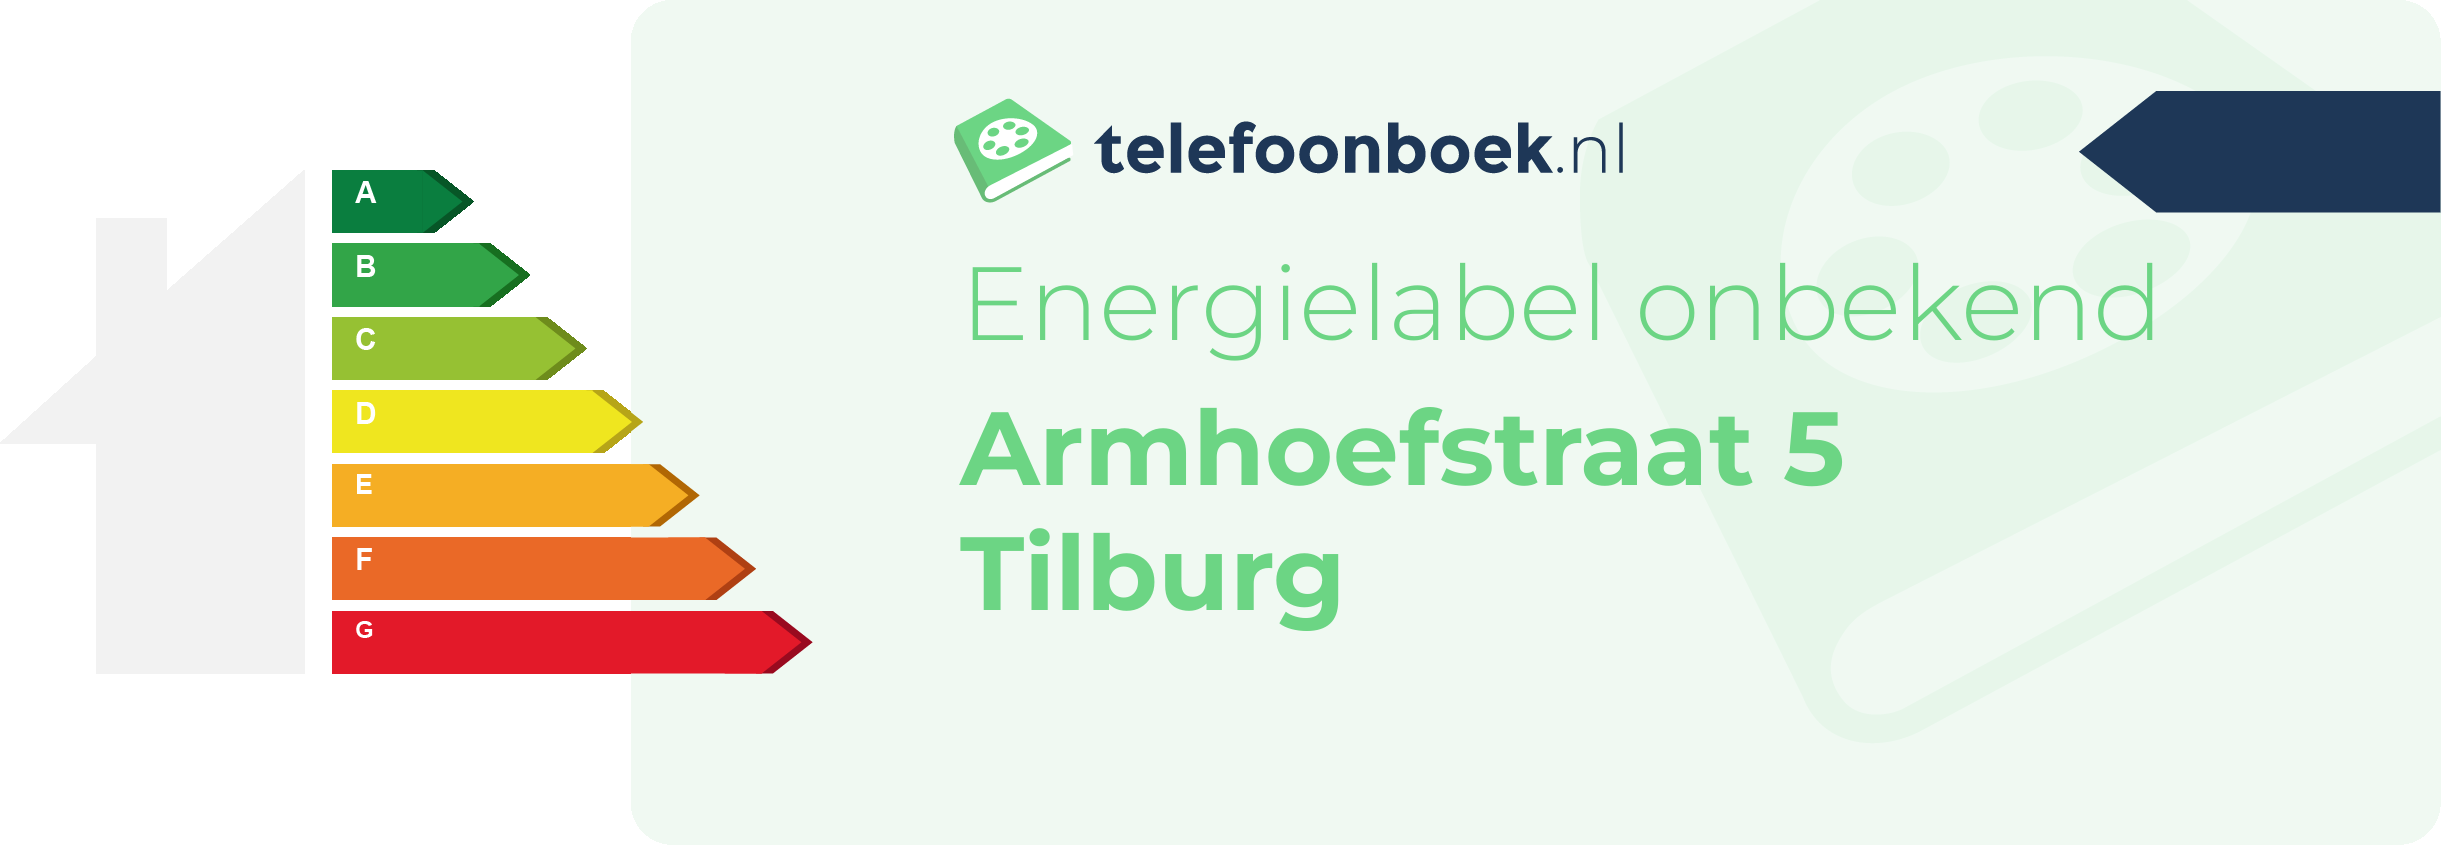 Energielabel Armhoefstraat 5 Tilburg